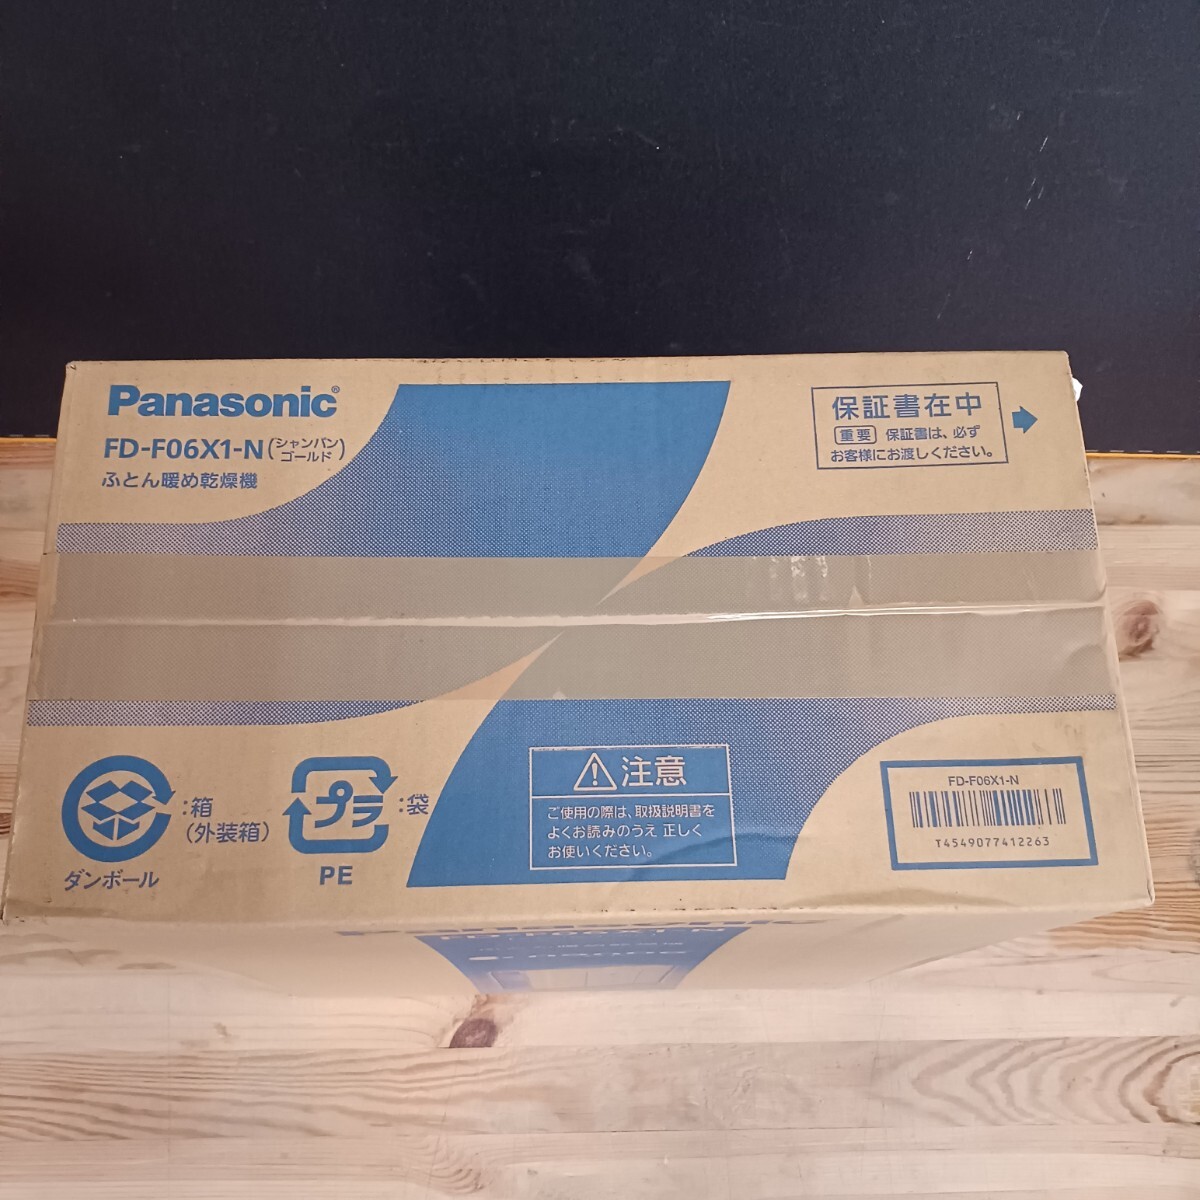 Panasonic Panasonic futon .. сушильная машина FD-F06X1-N( золотистый, цвет шампанского ) не использовался хранение товар 